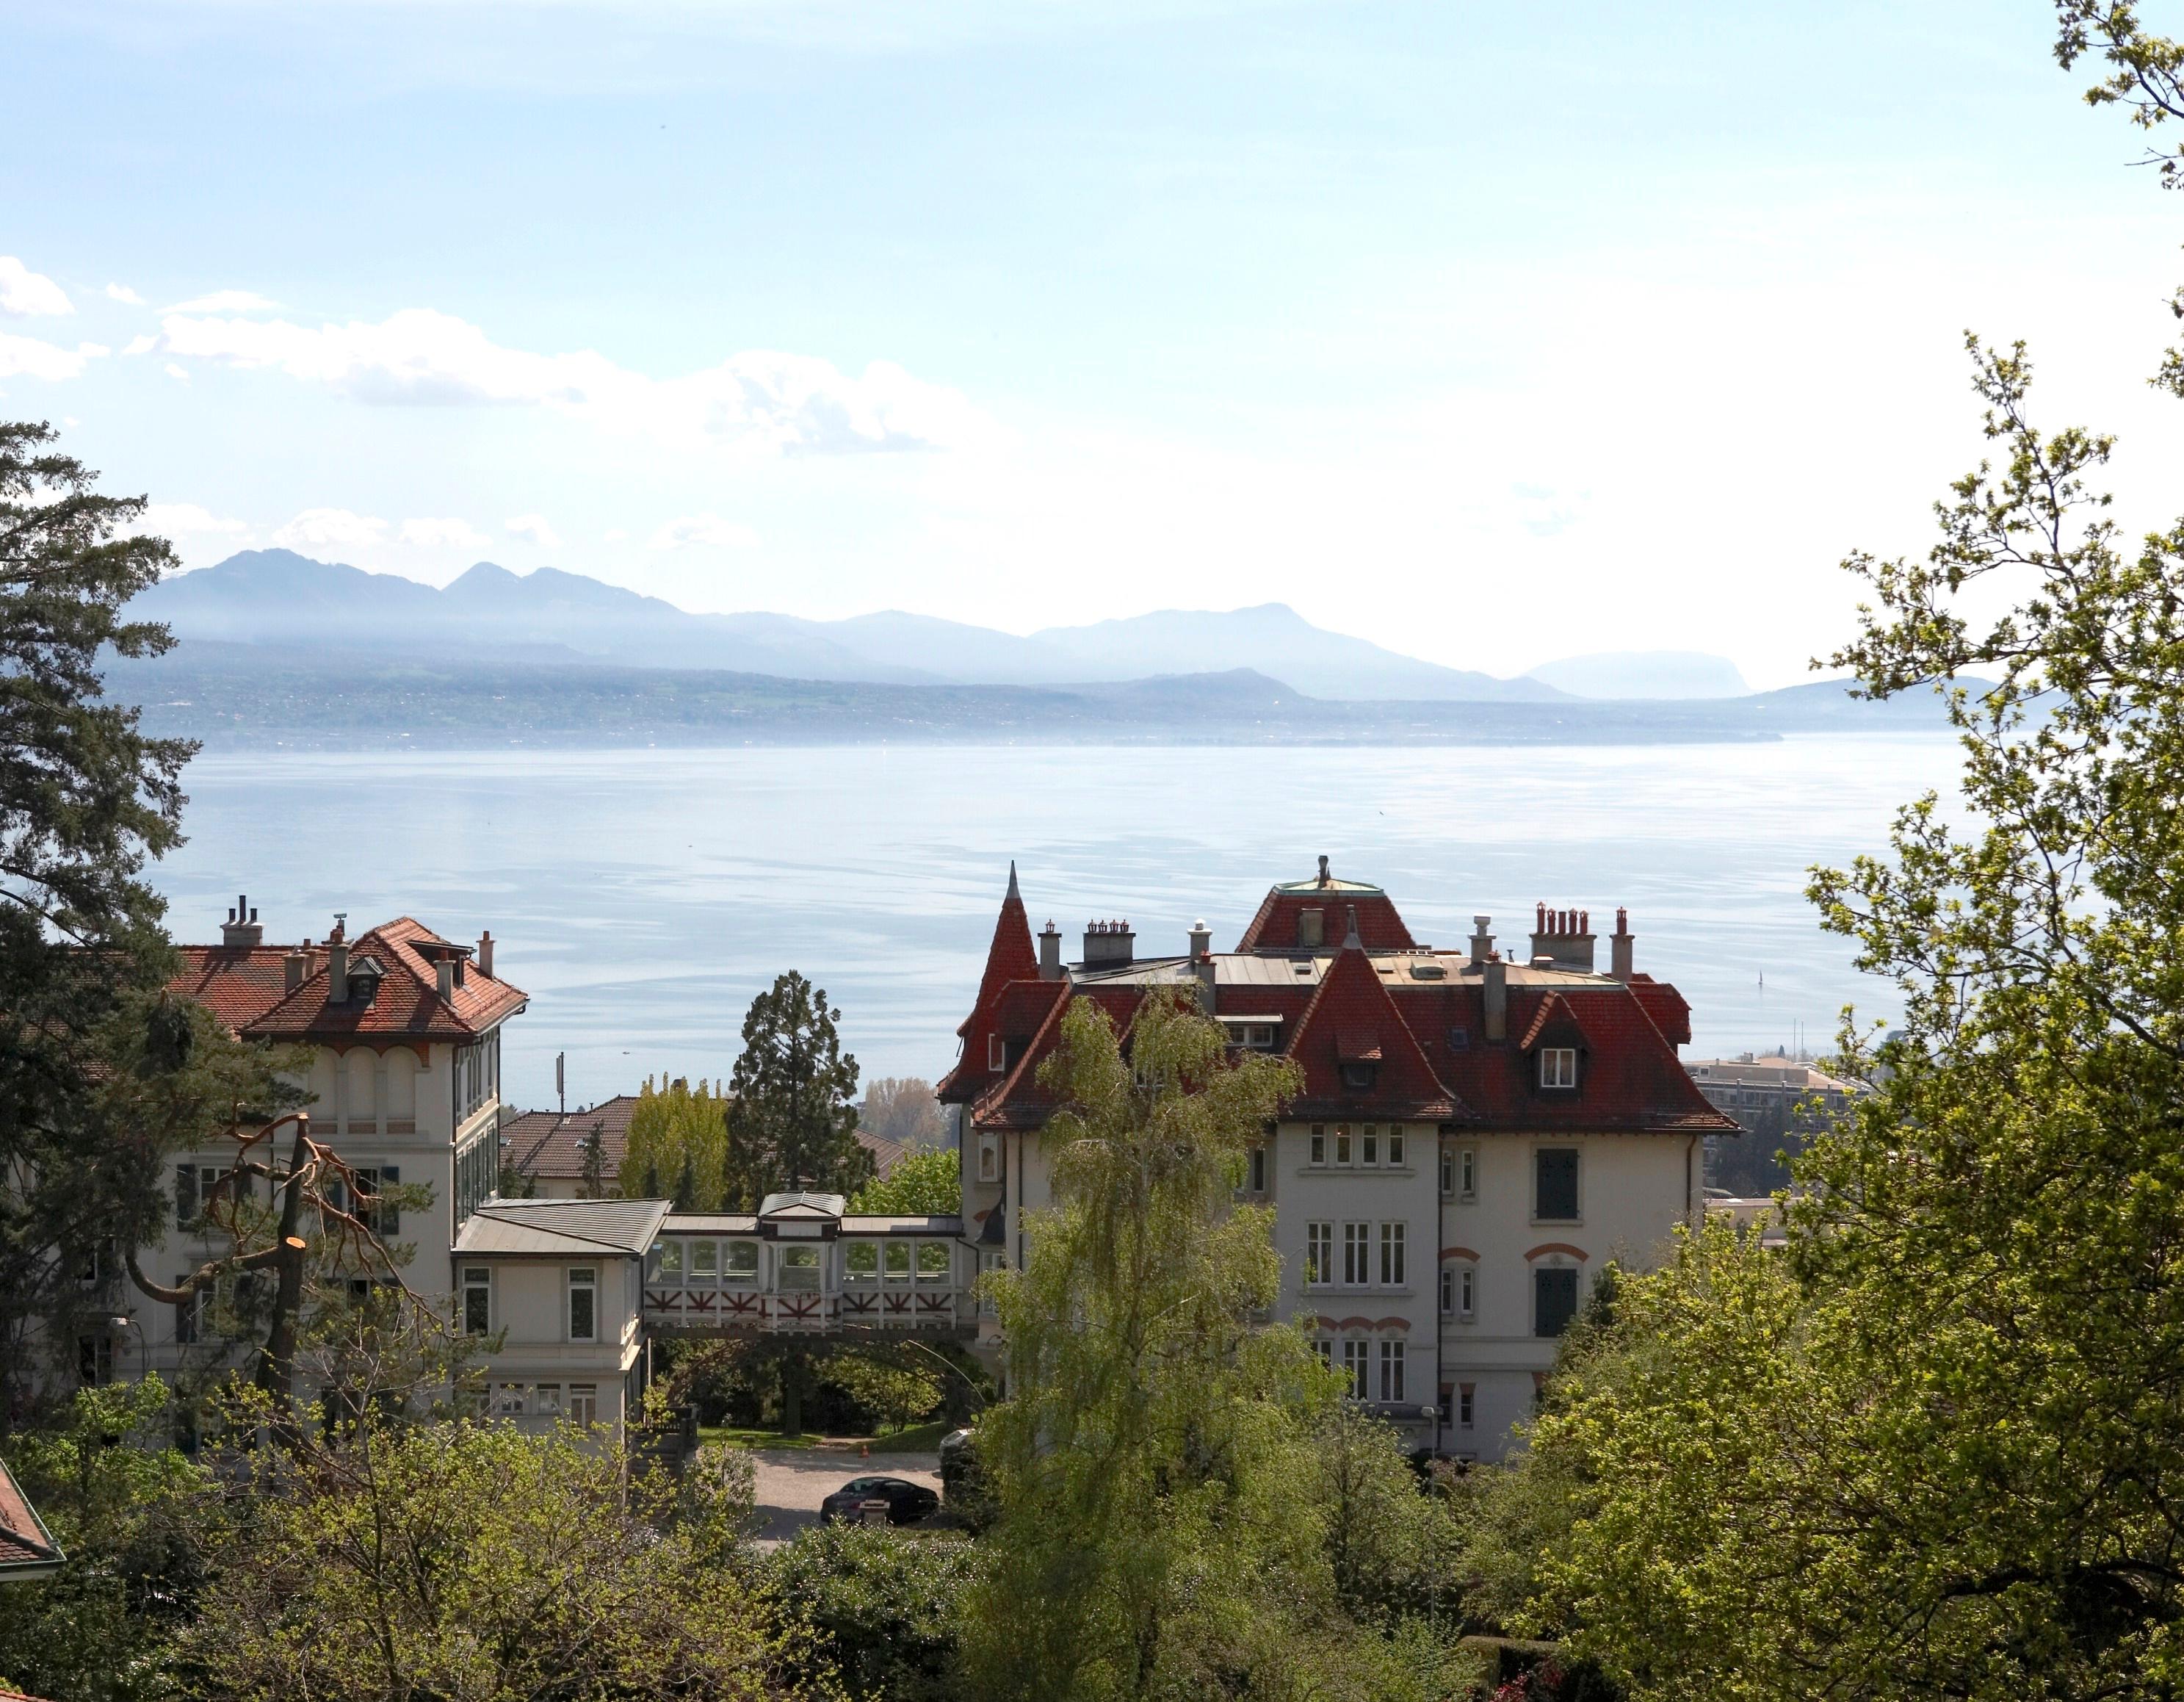 Brillantmont International School campus and lake view in Lausanne Switzerland.jpg